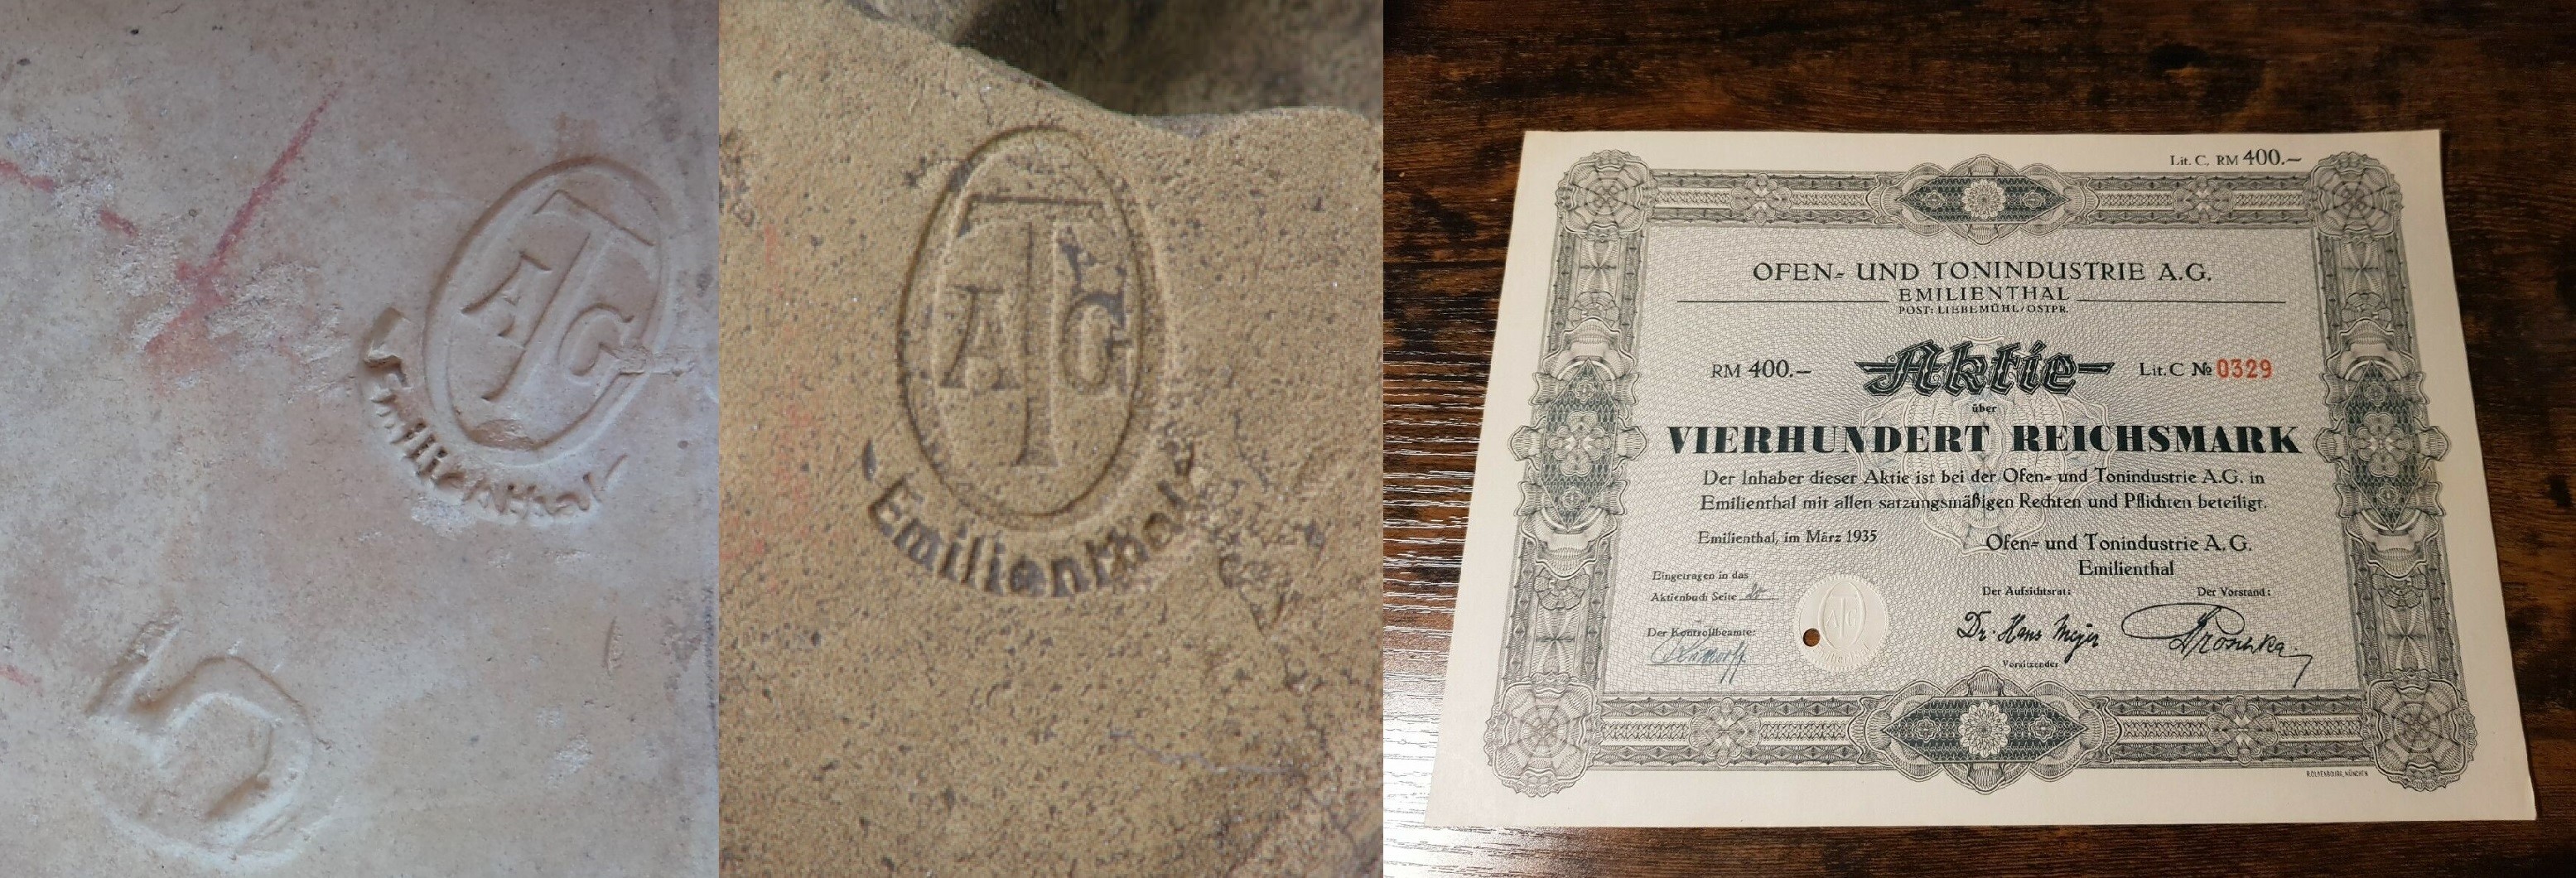 Kafle i dokument akcyjny z Emilianowa (Emilienthal) - pozostałości po cegielni i fabryce pod Miłomłynem